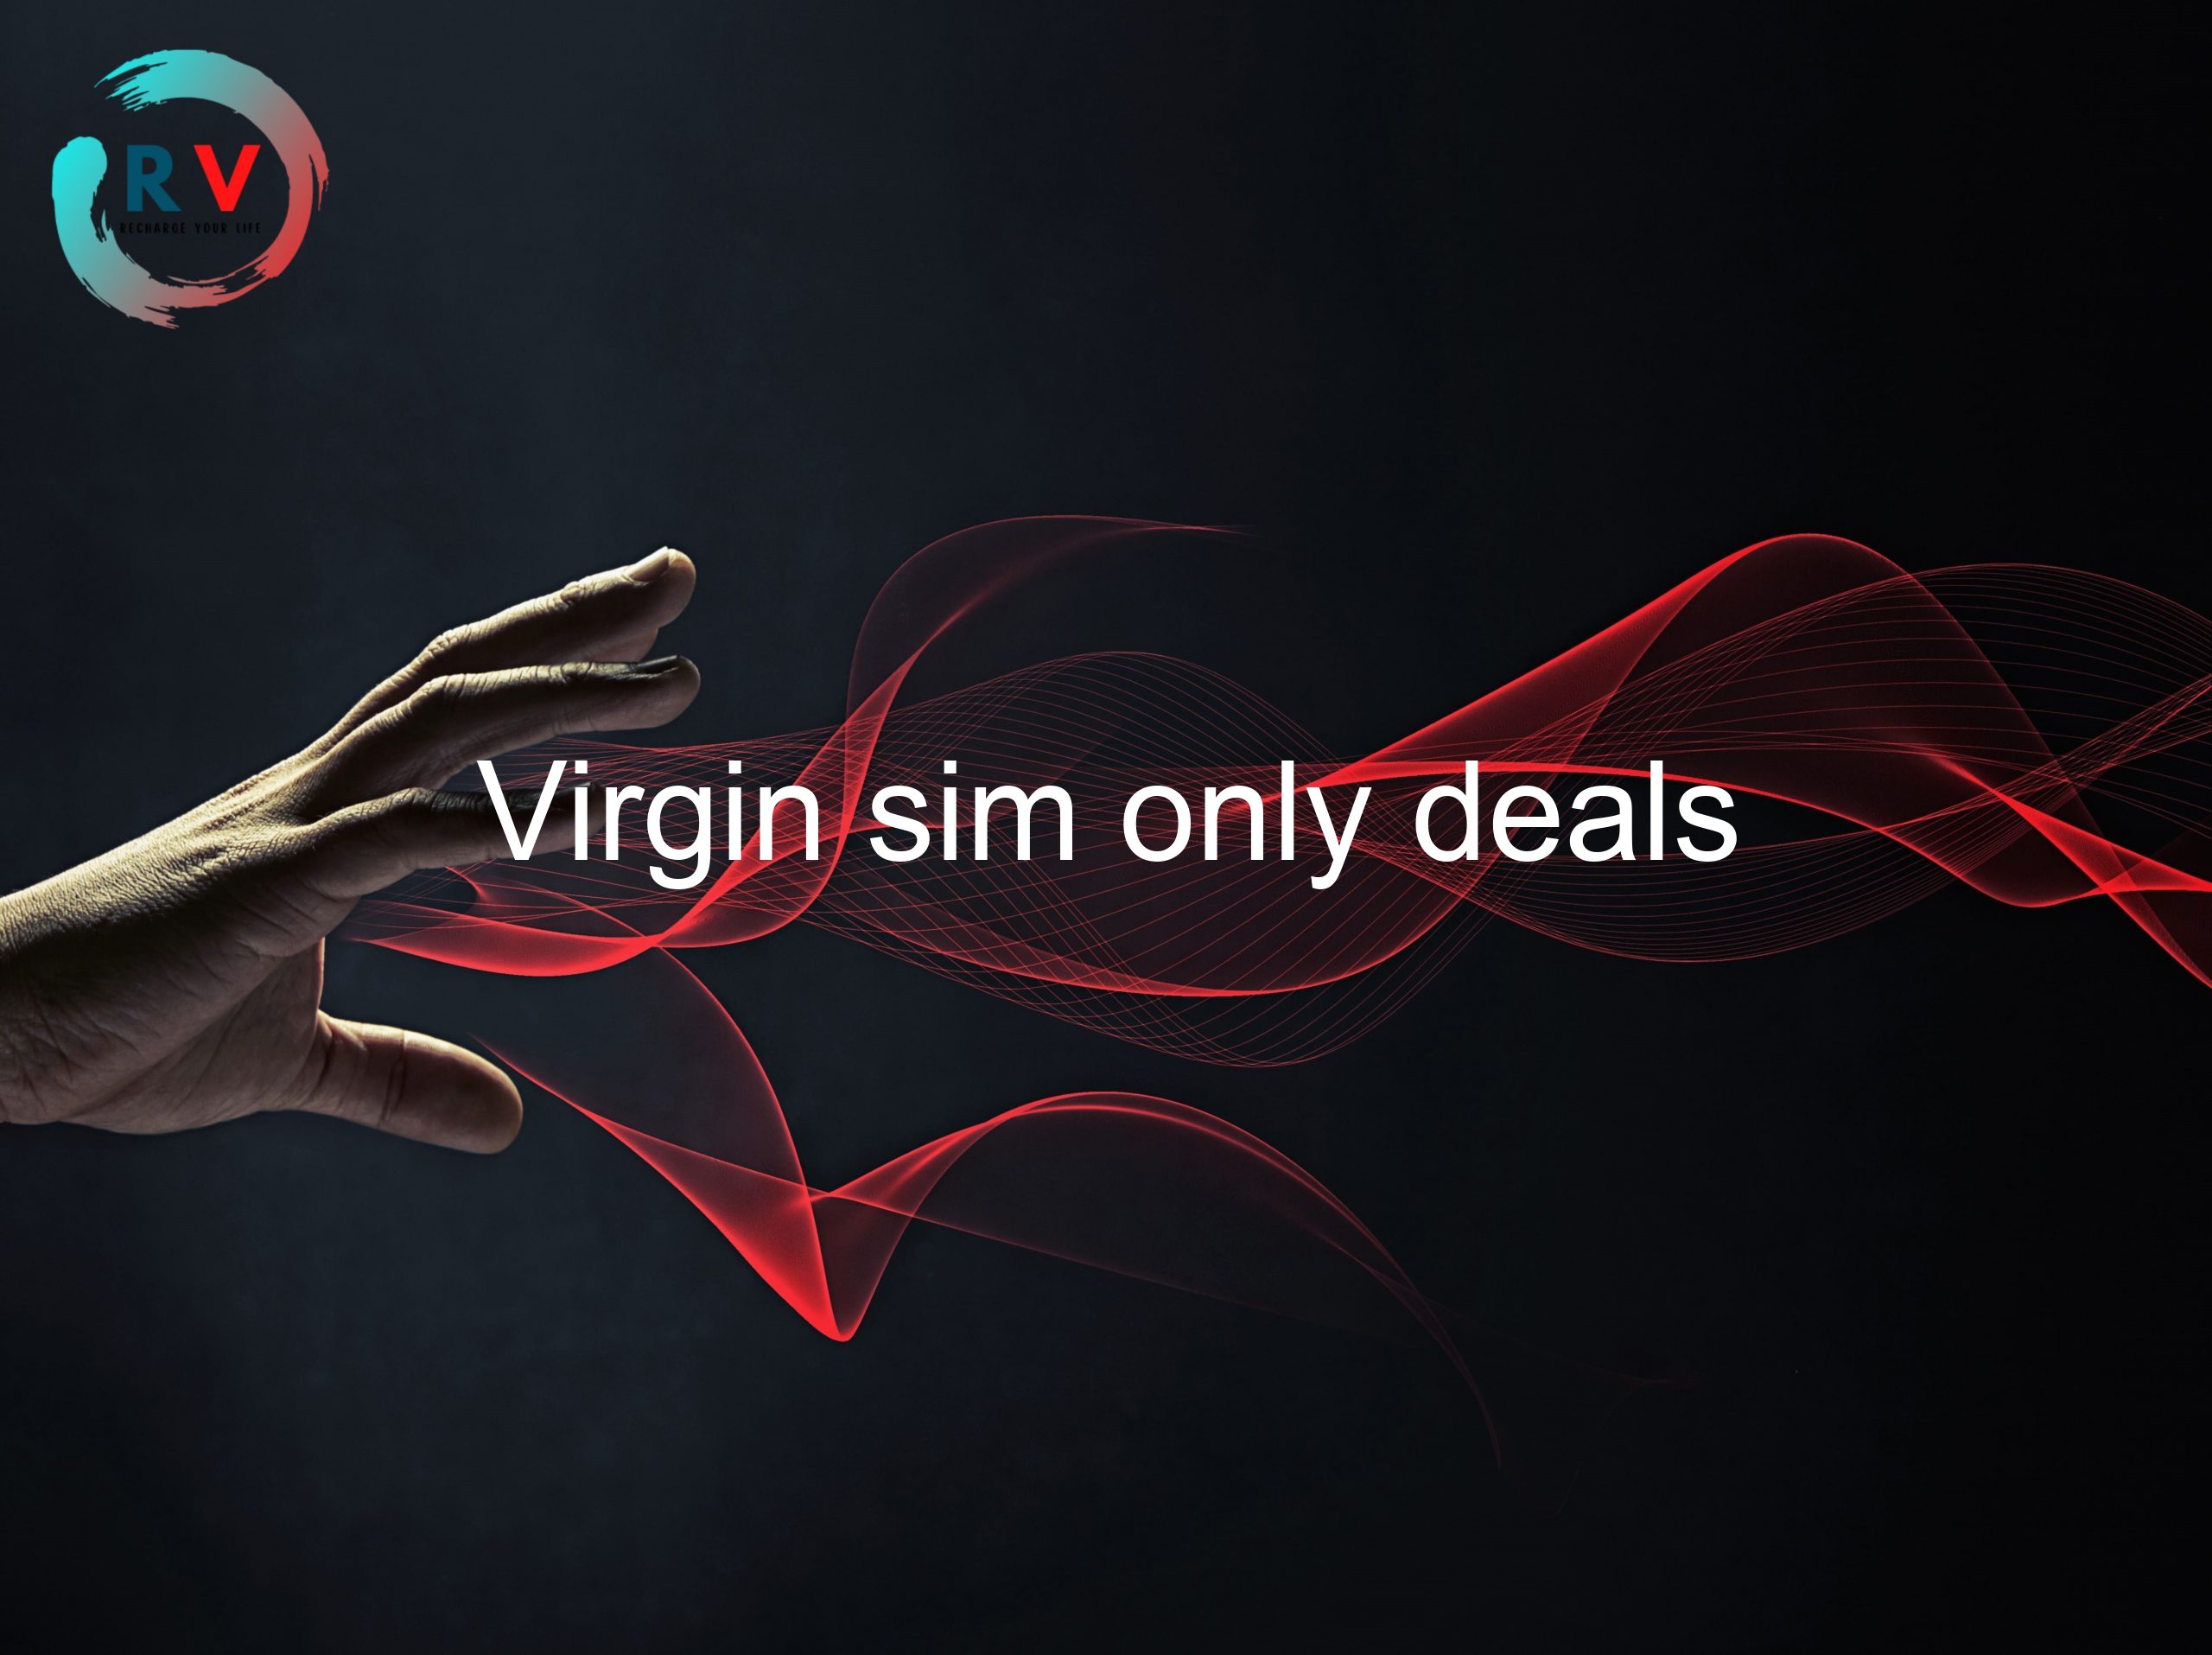 Virgin sim only deals